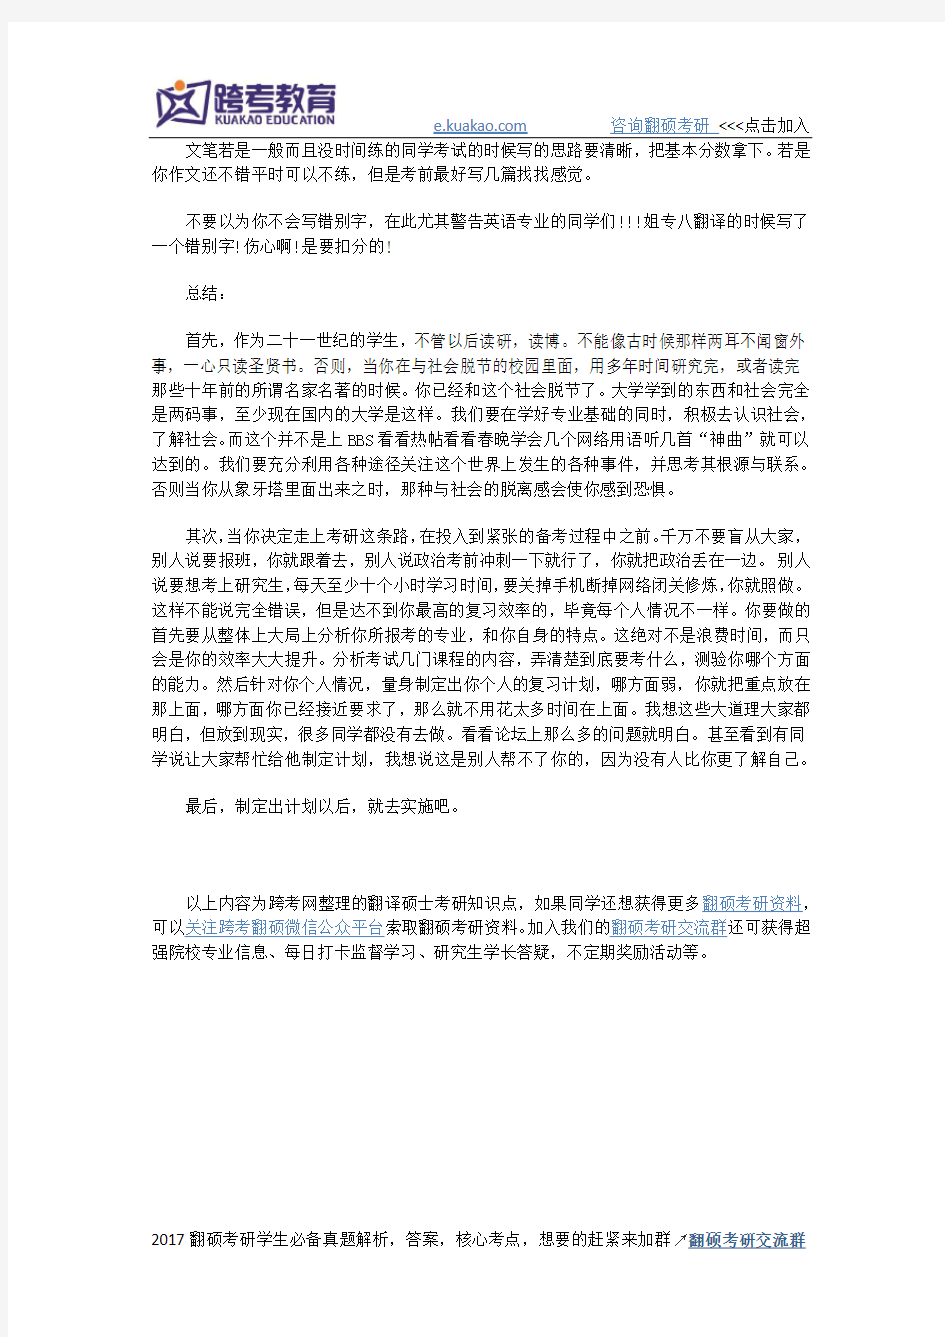 翻译硕士汉语写作与百科知识复习技巧